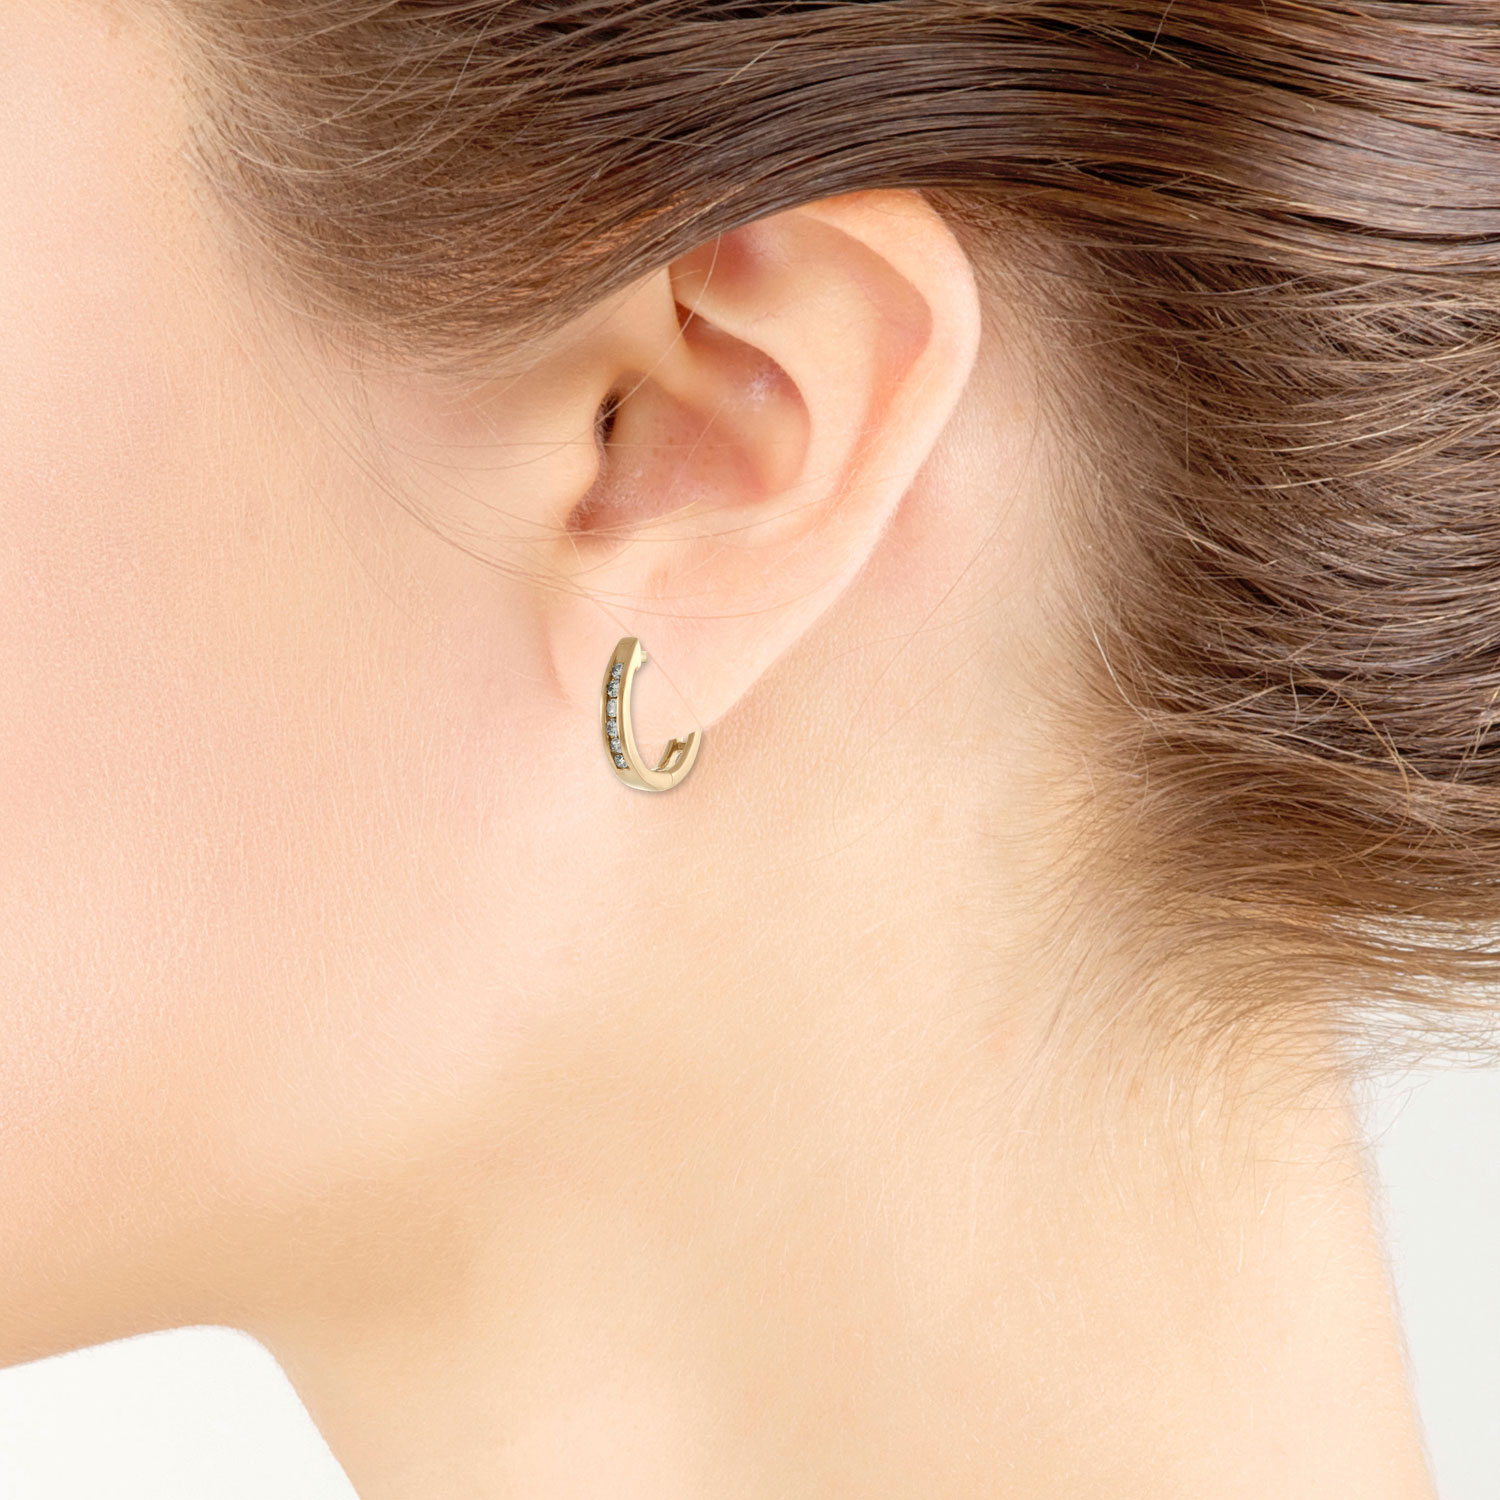 Womens J-Hoop Stud Earrings In 14K Rose Gold Over Sterling Silver